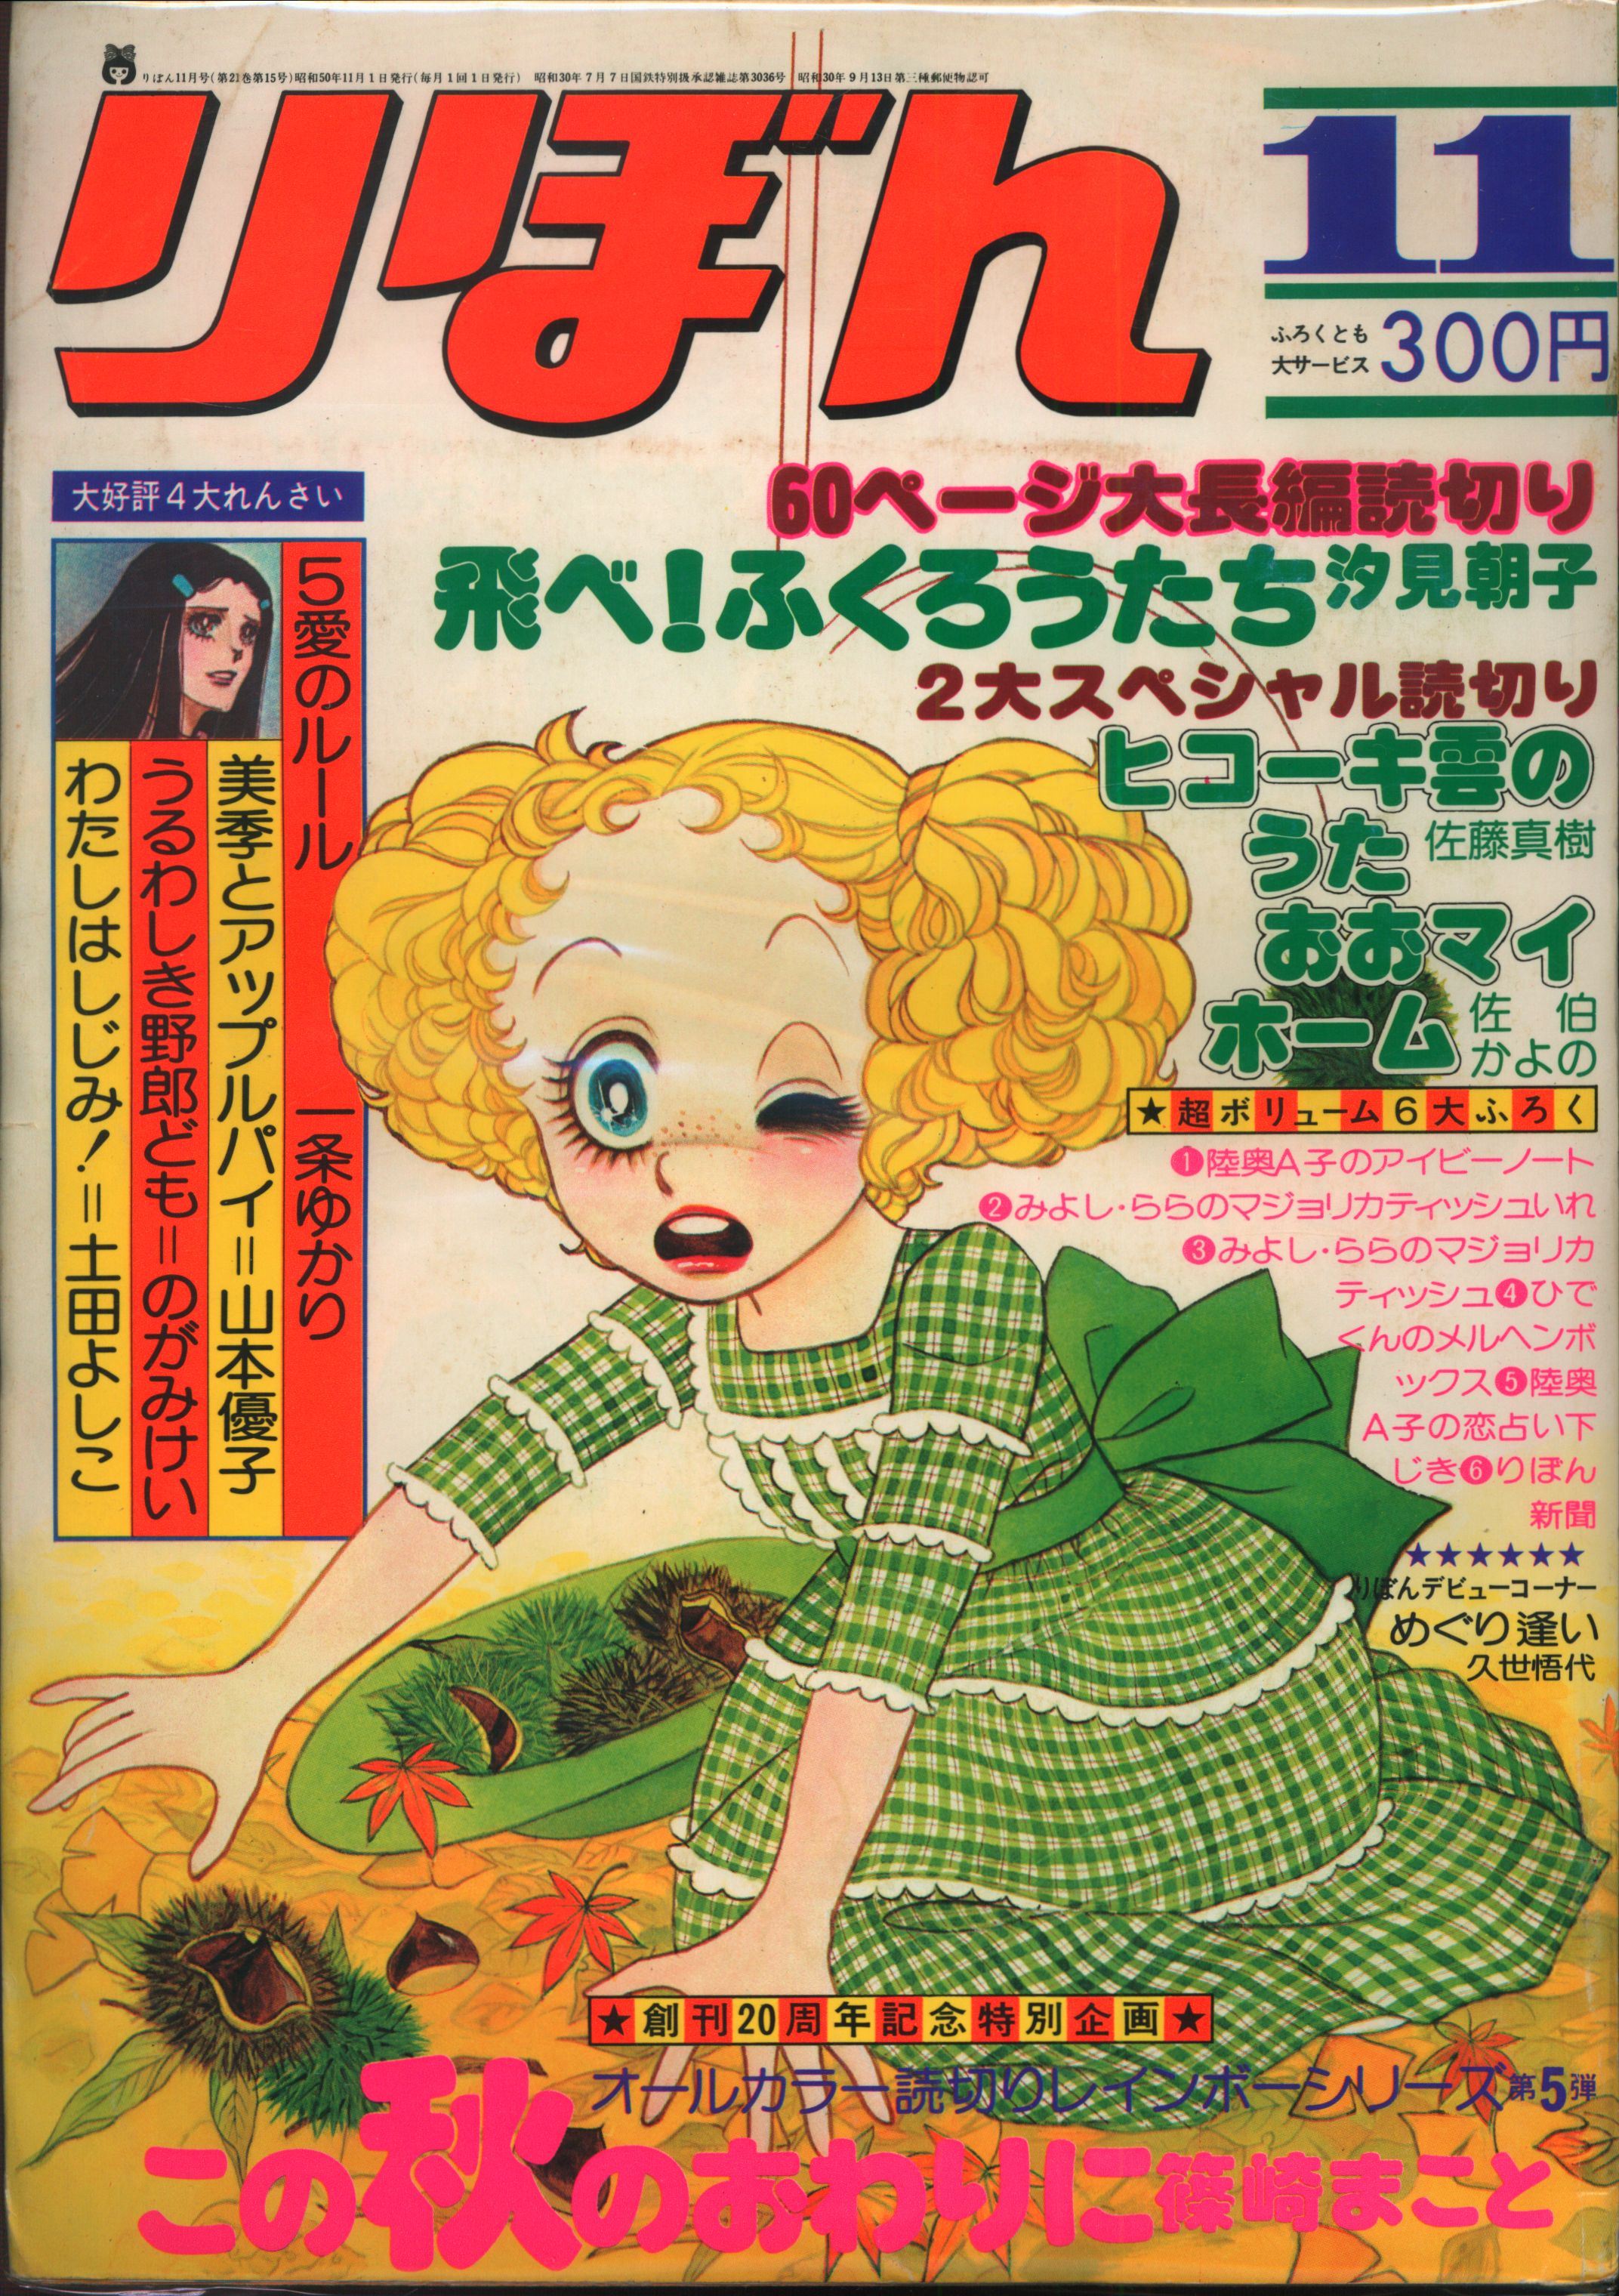 集英社 1975年 昭和50年 の漫画雑誌 りぼん 1975年 昭和50年 11月号 7511 まんだらけ Mandarake